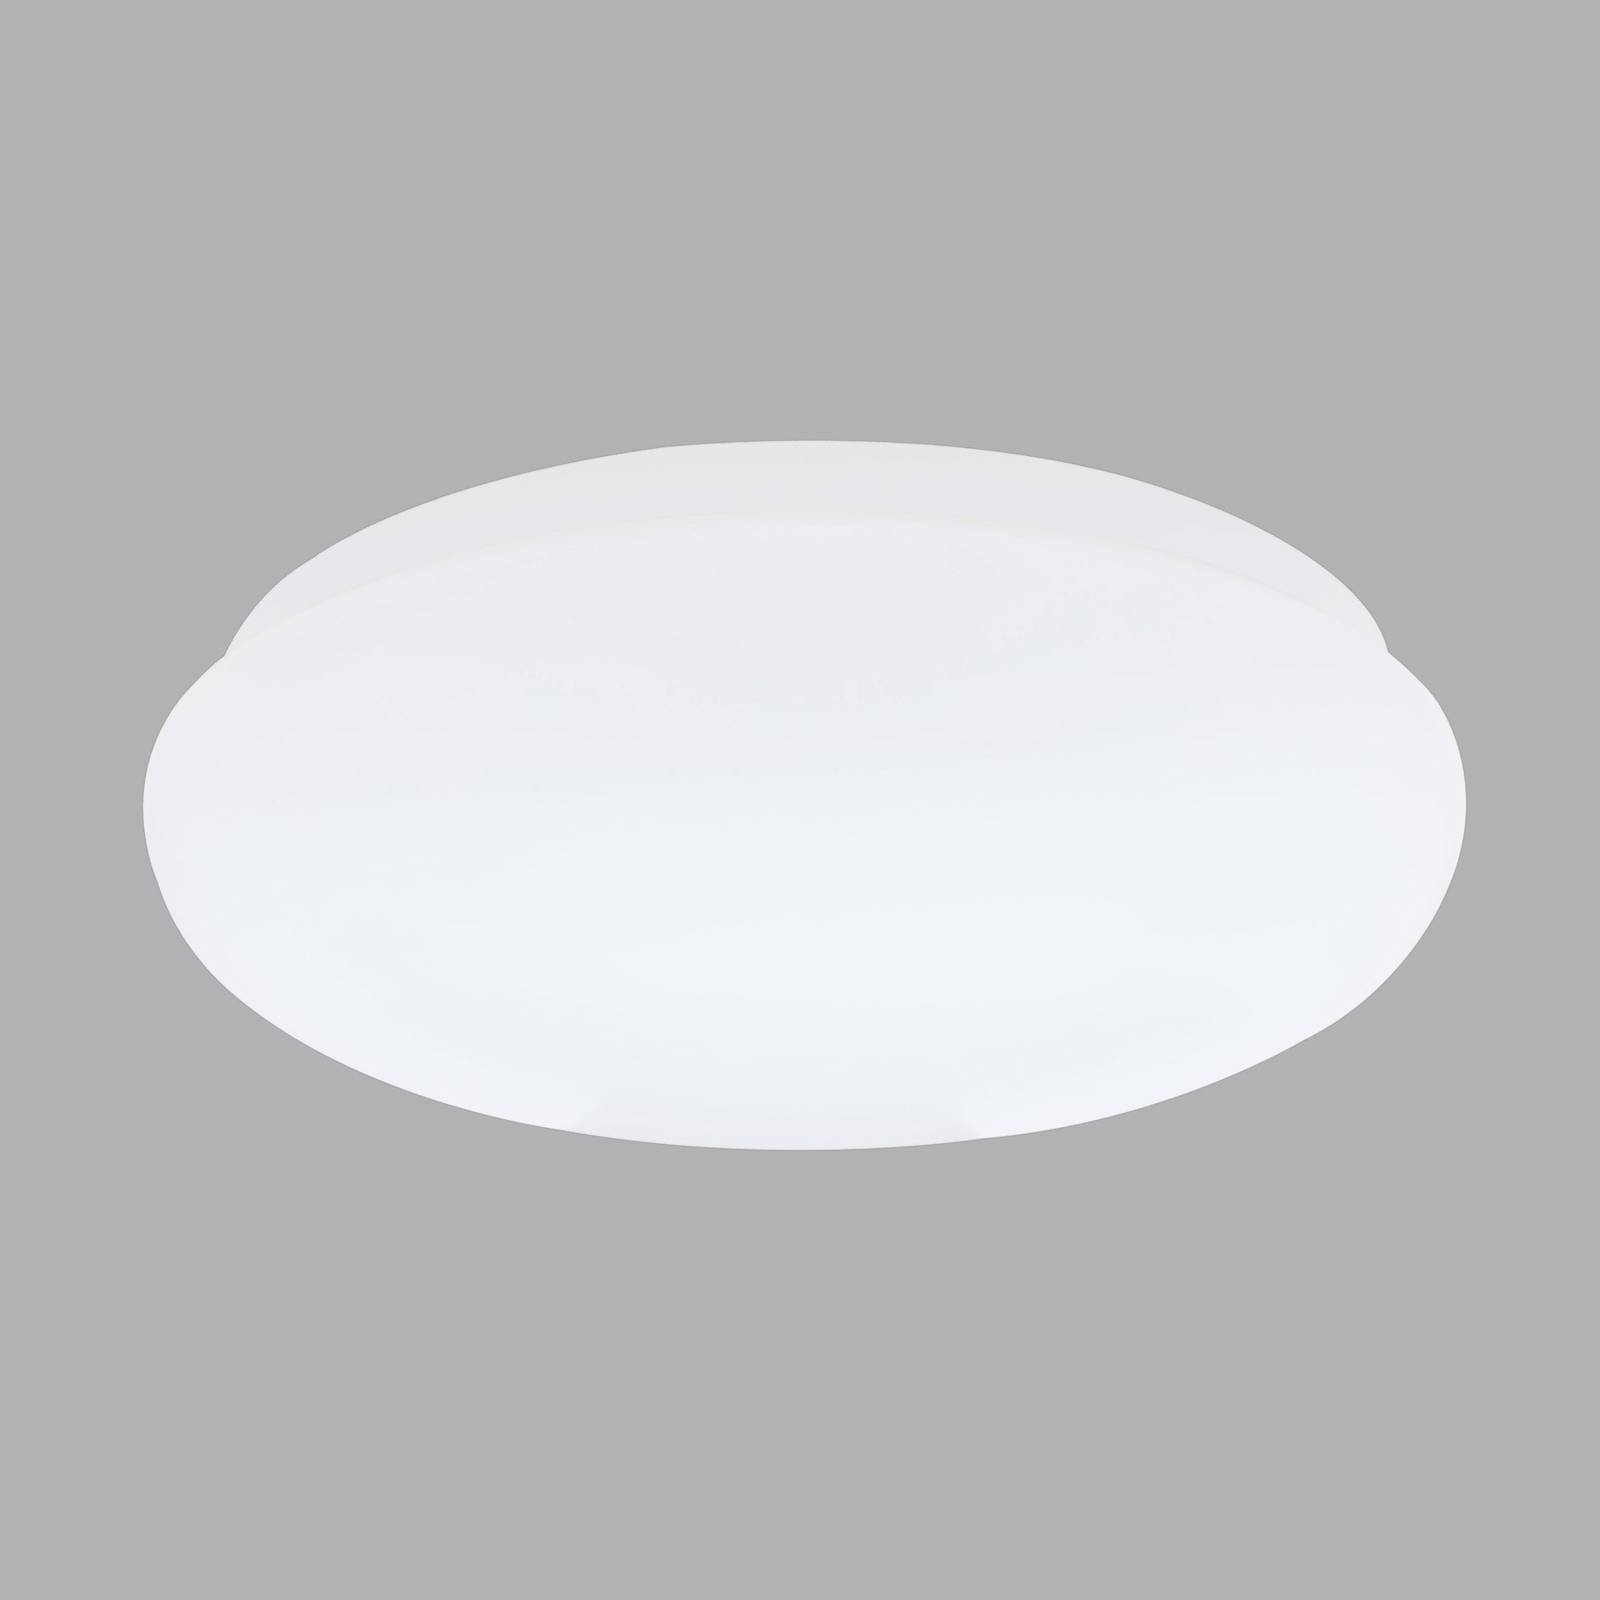 Siteco Rondel 40 luminaire à vasque LED 30,6cm 830